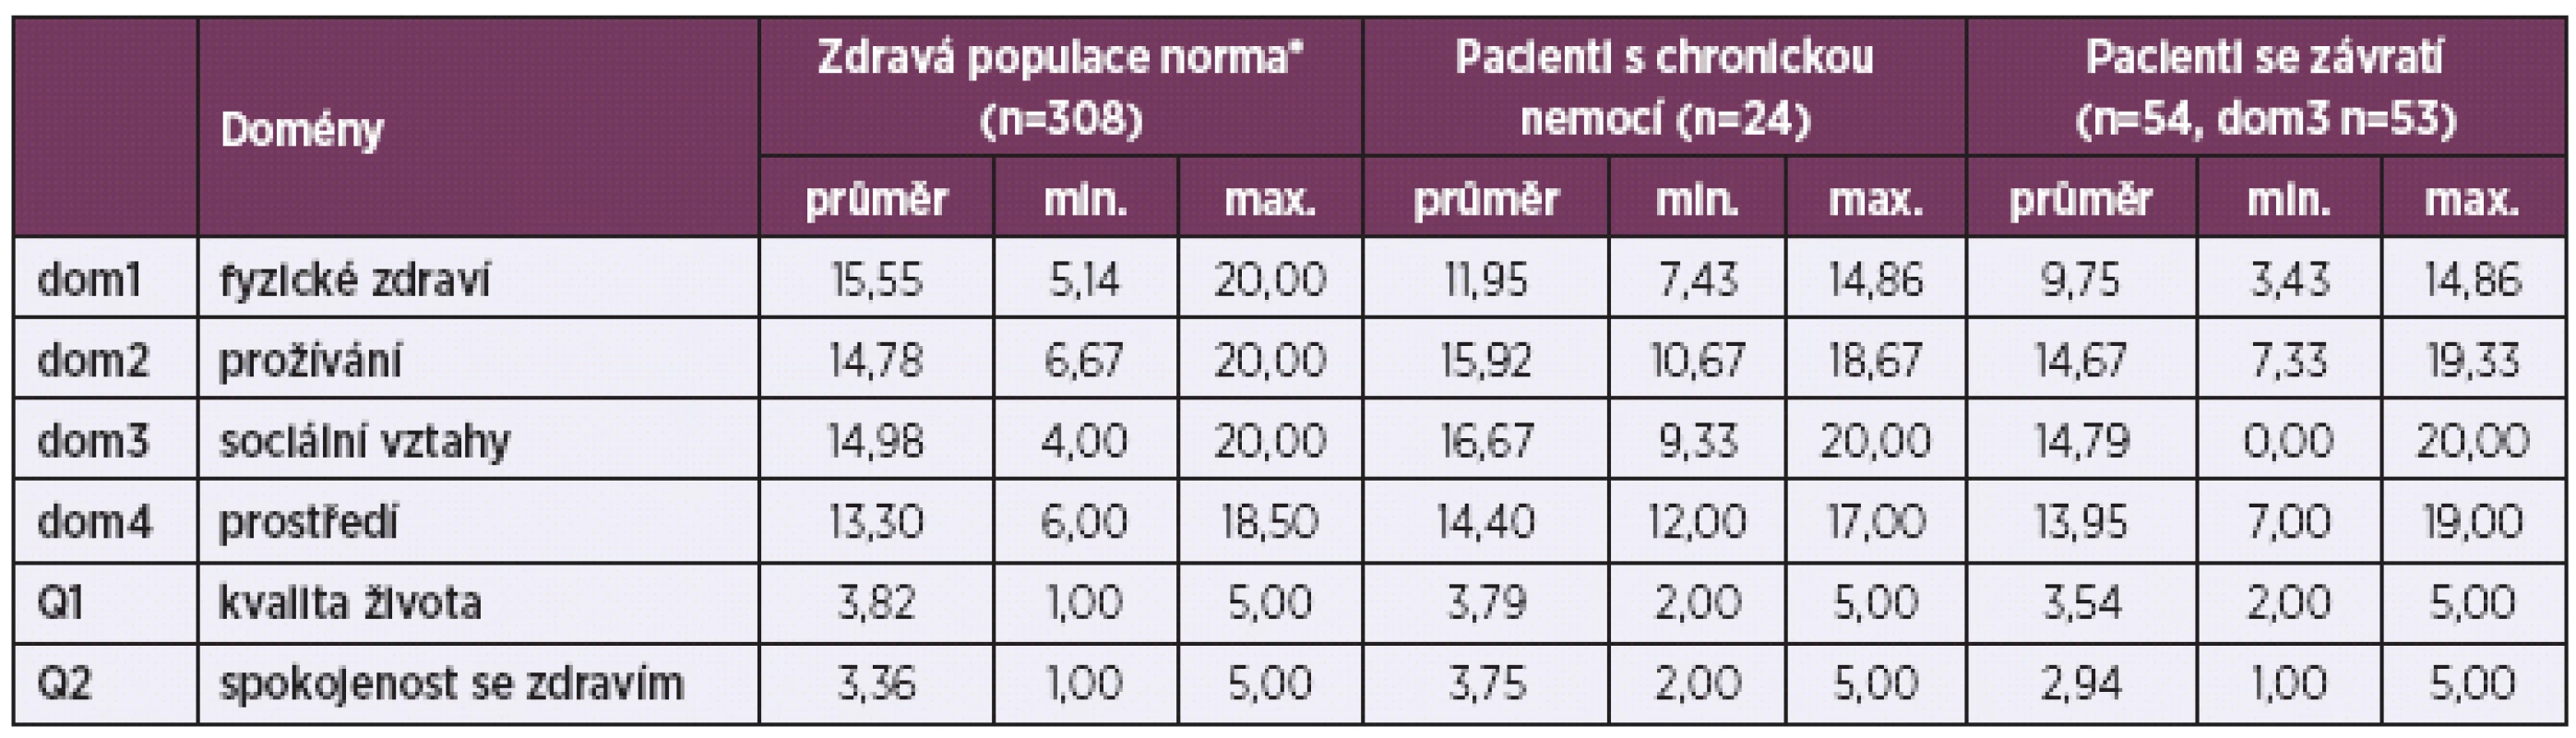 Průměrné skóry domén WHOQOL-BREF: hodnocení u sledovaných skupin pacientů a běžné populace